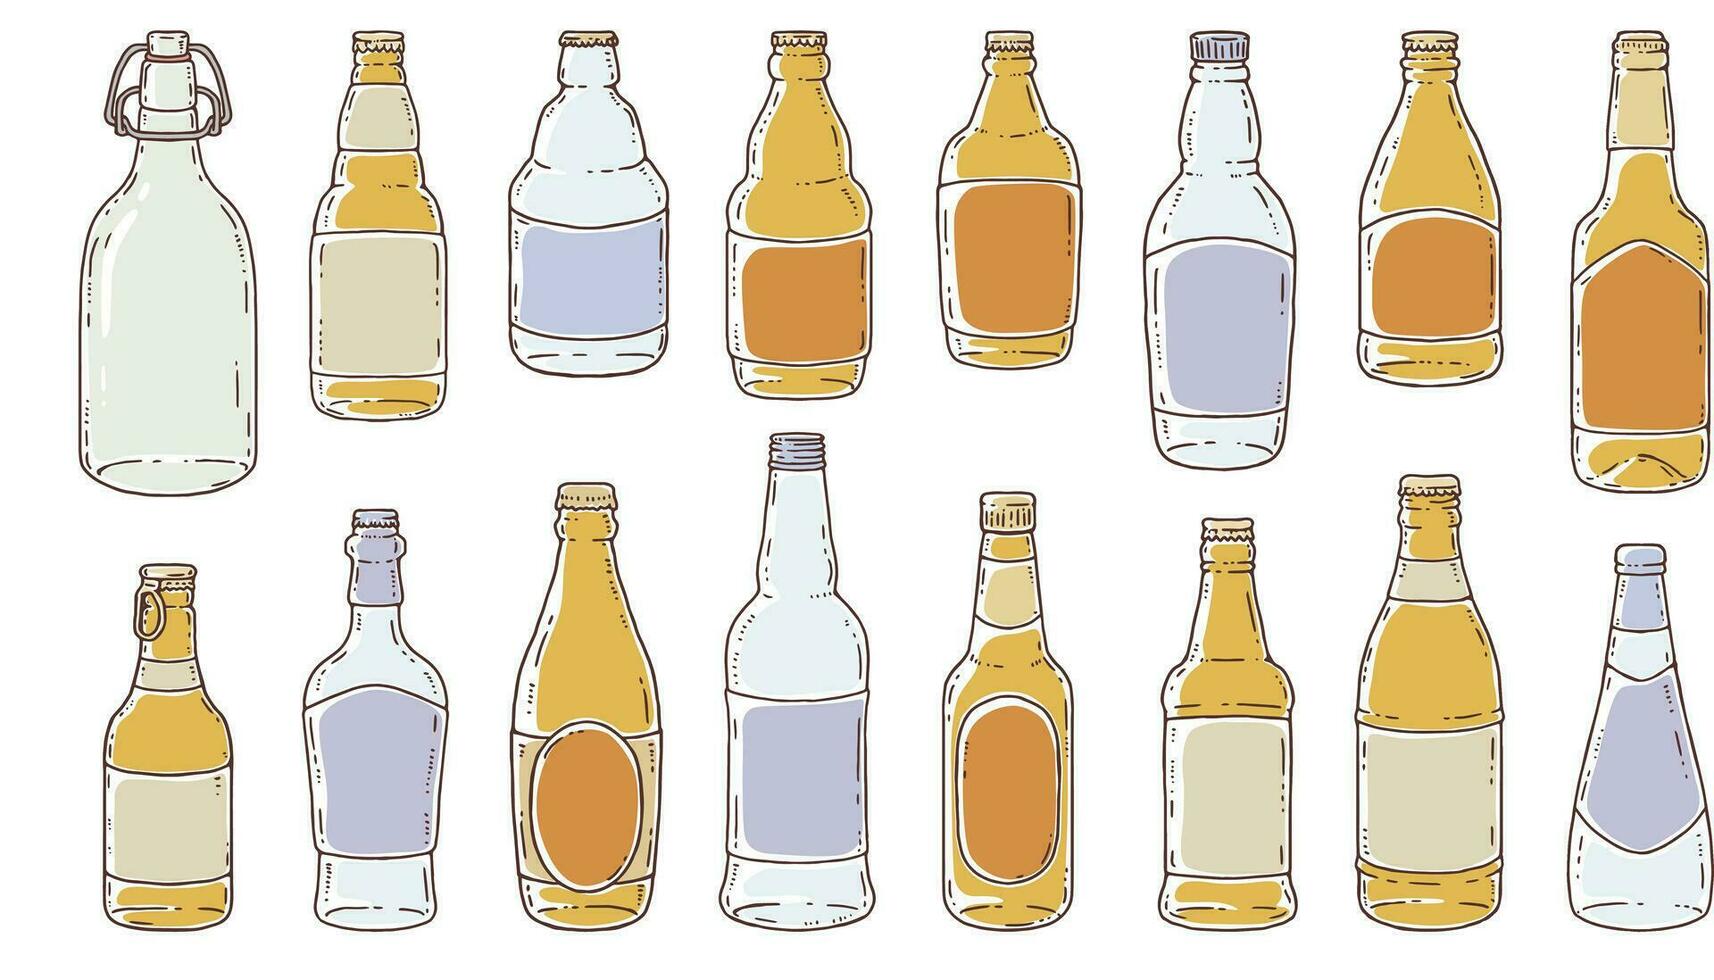 reeks van bier flessen. vector illustratie in tekening stijl